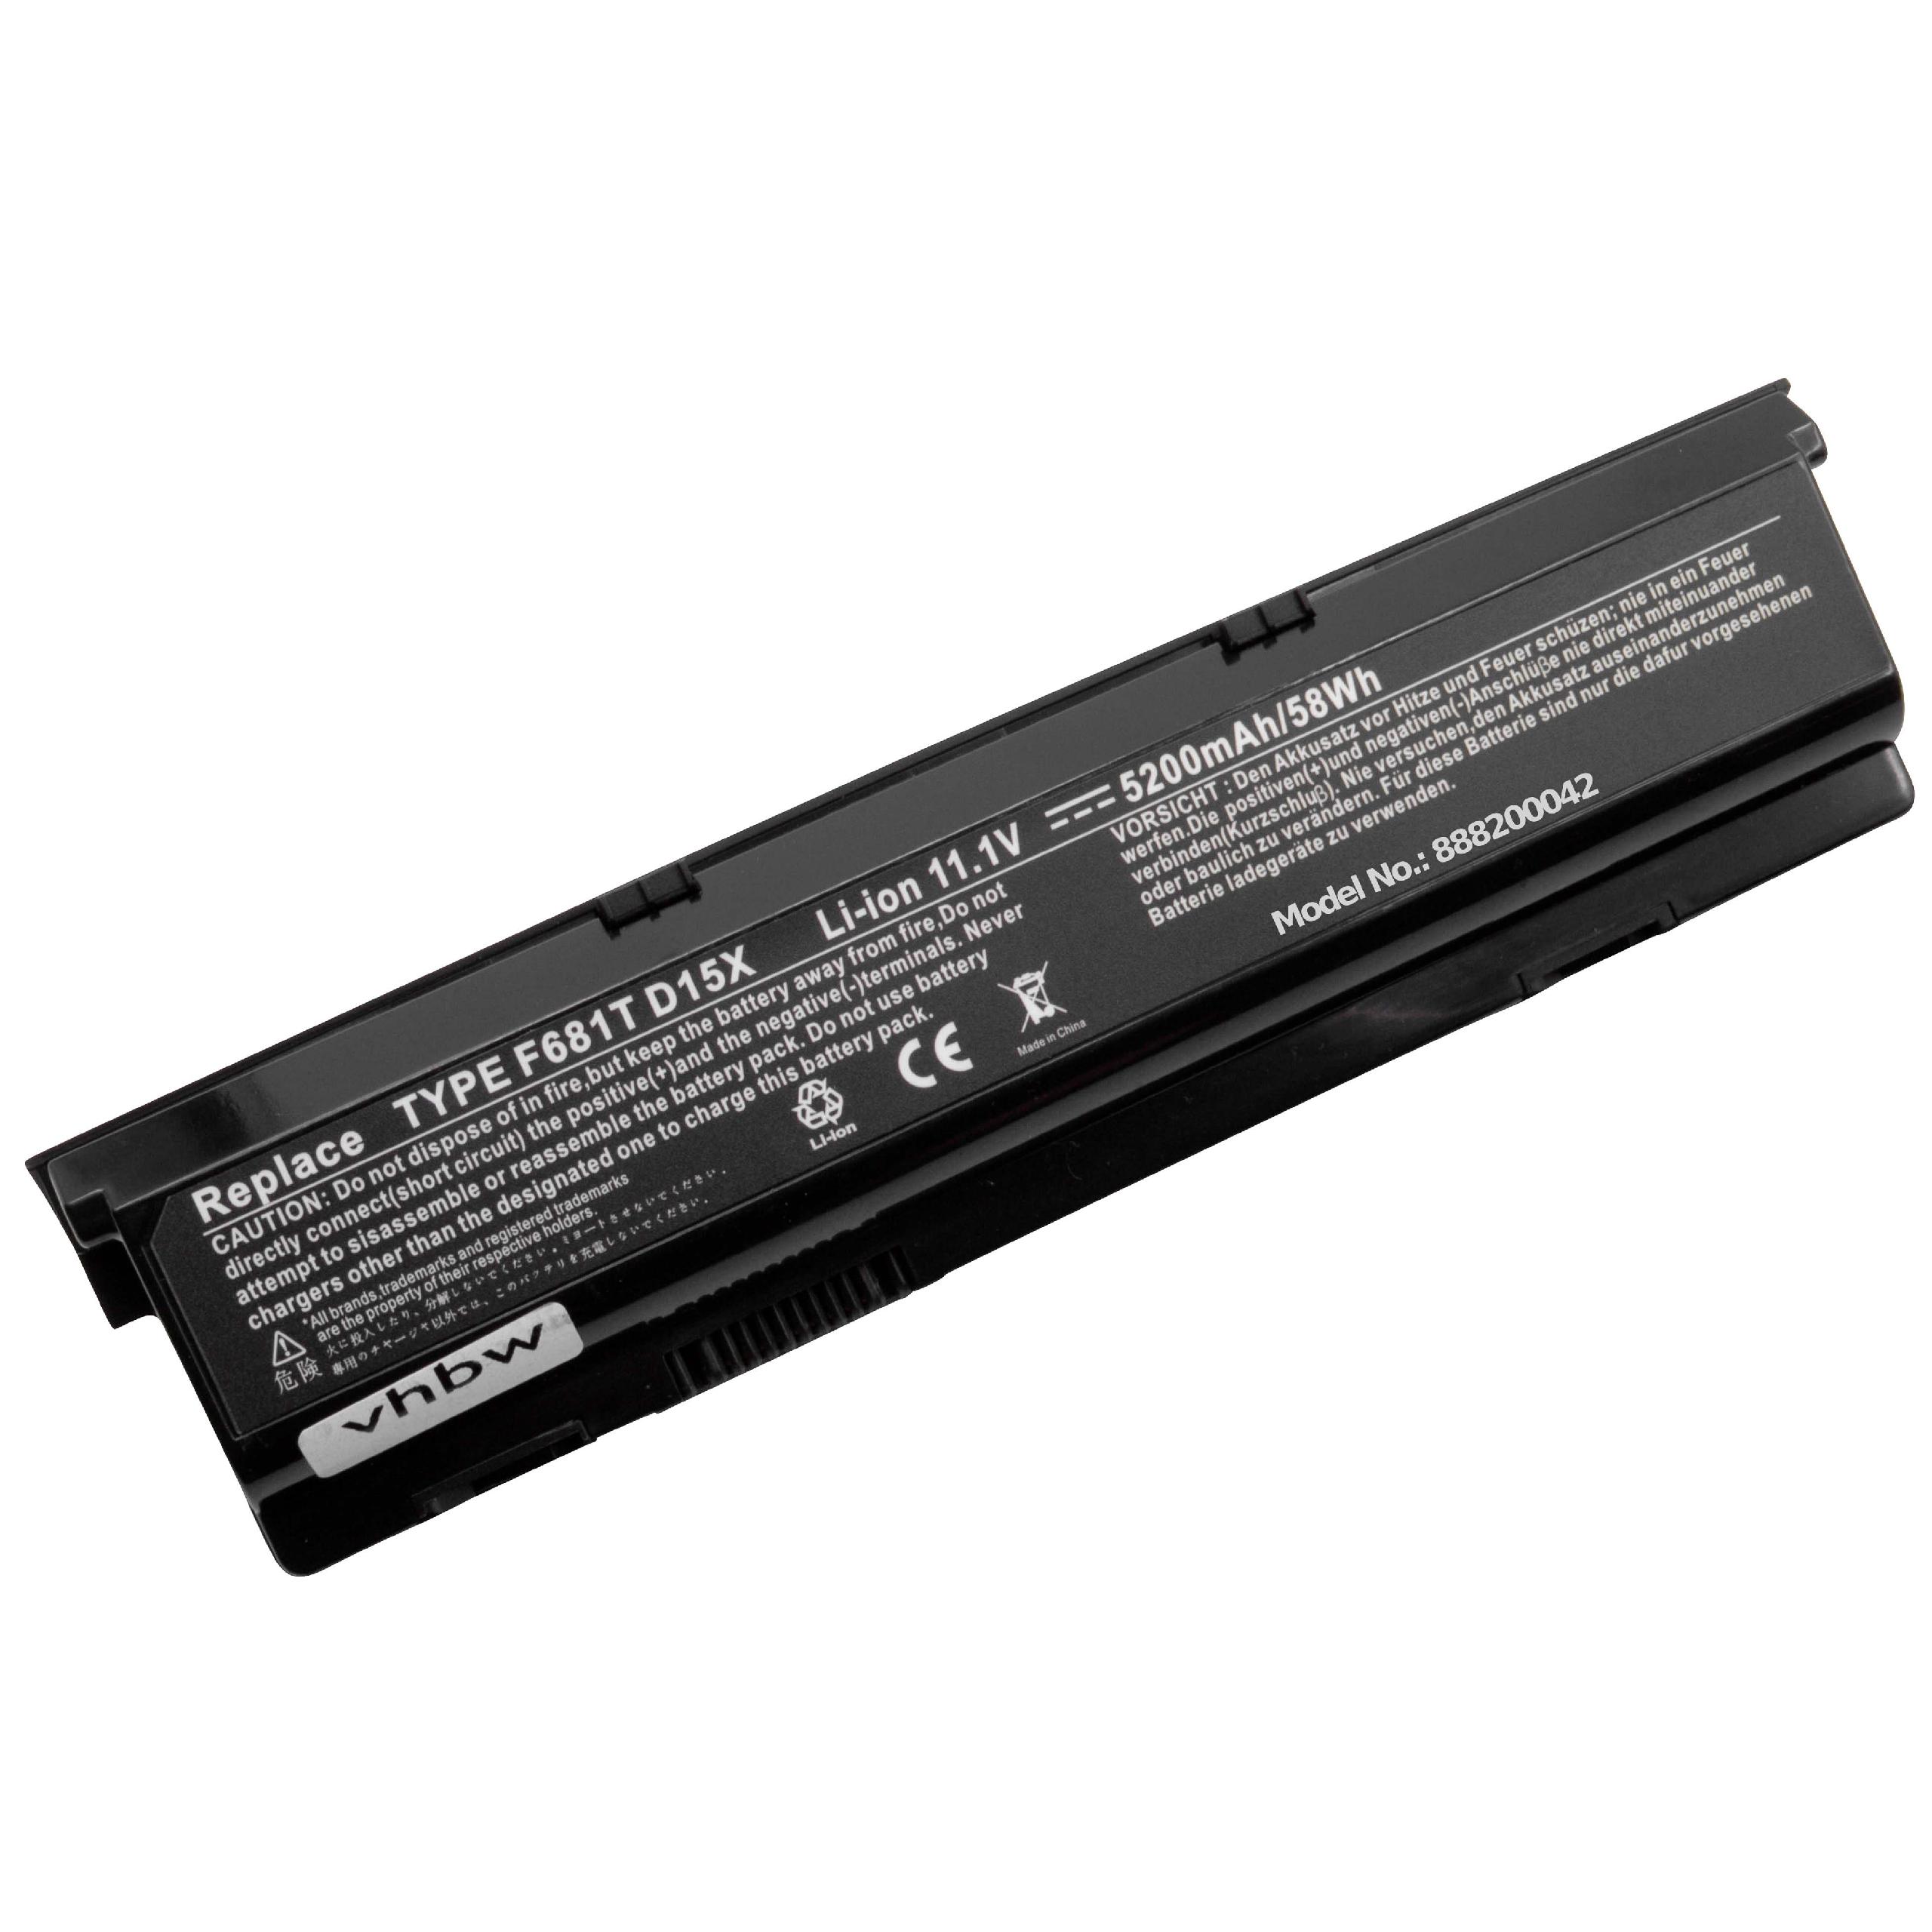 Batterie remplace Dell 0HC26Y, 0F681T, 0D951T, 0W3VX3 pour ordinateur portable - 5200mAh 11,1V Li-ion, noir